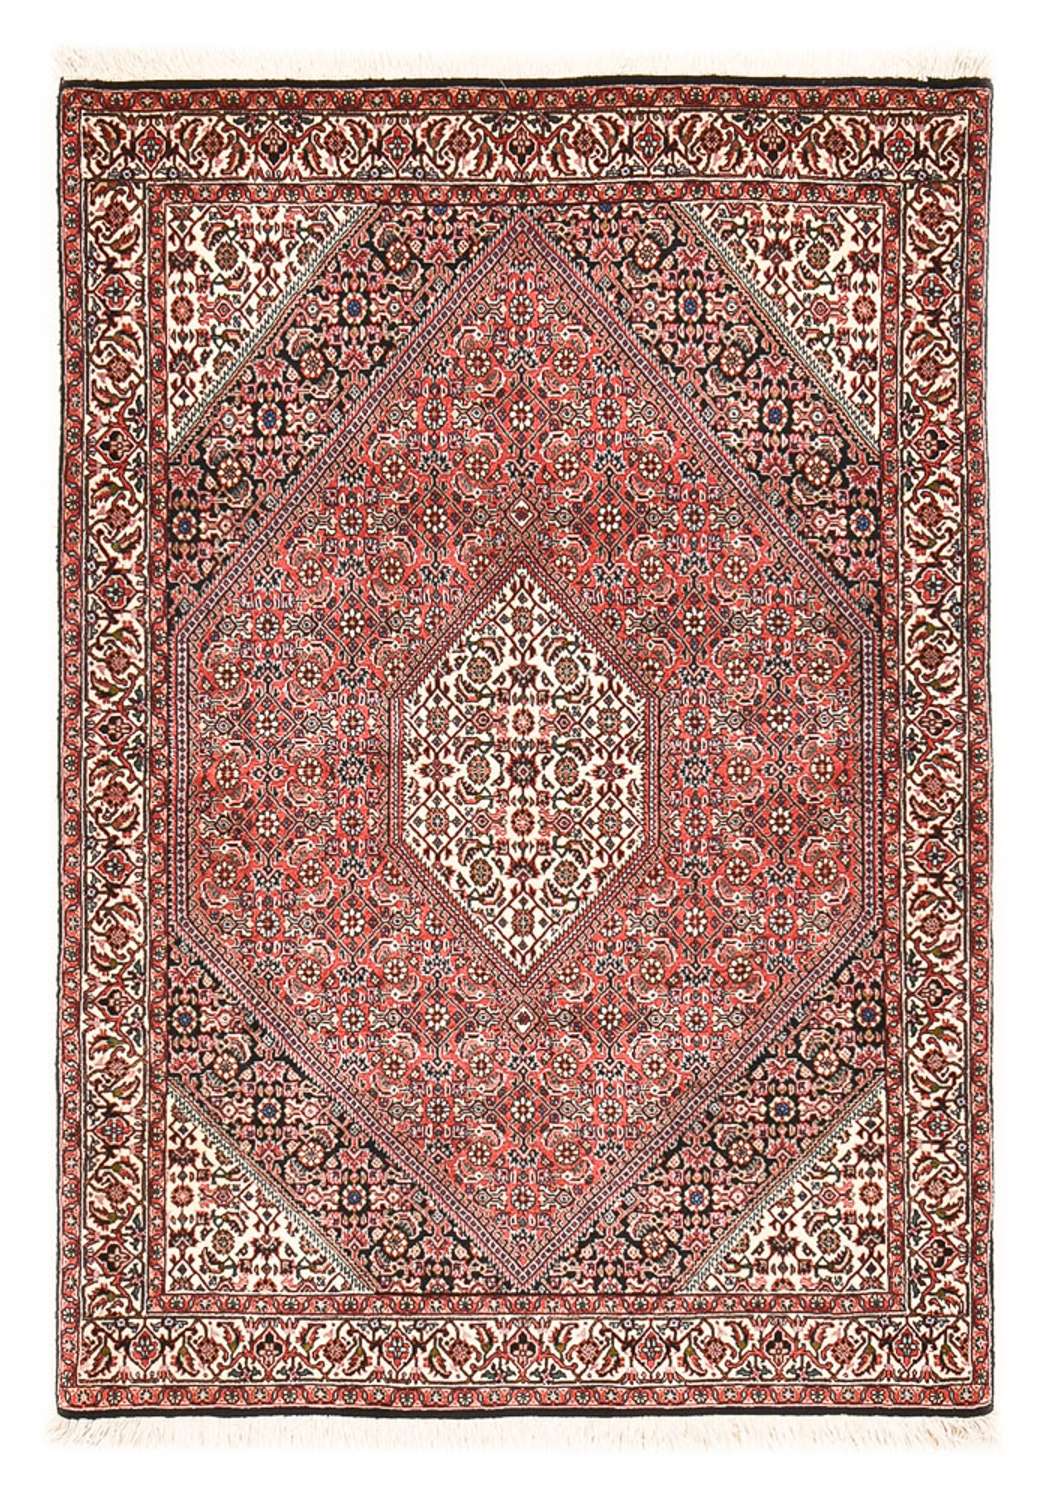 Persisk matta - Bijar - 156 x 110 cm - ljusröd